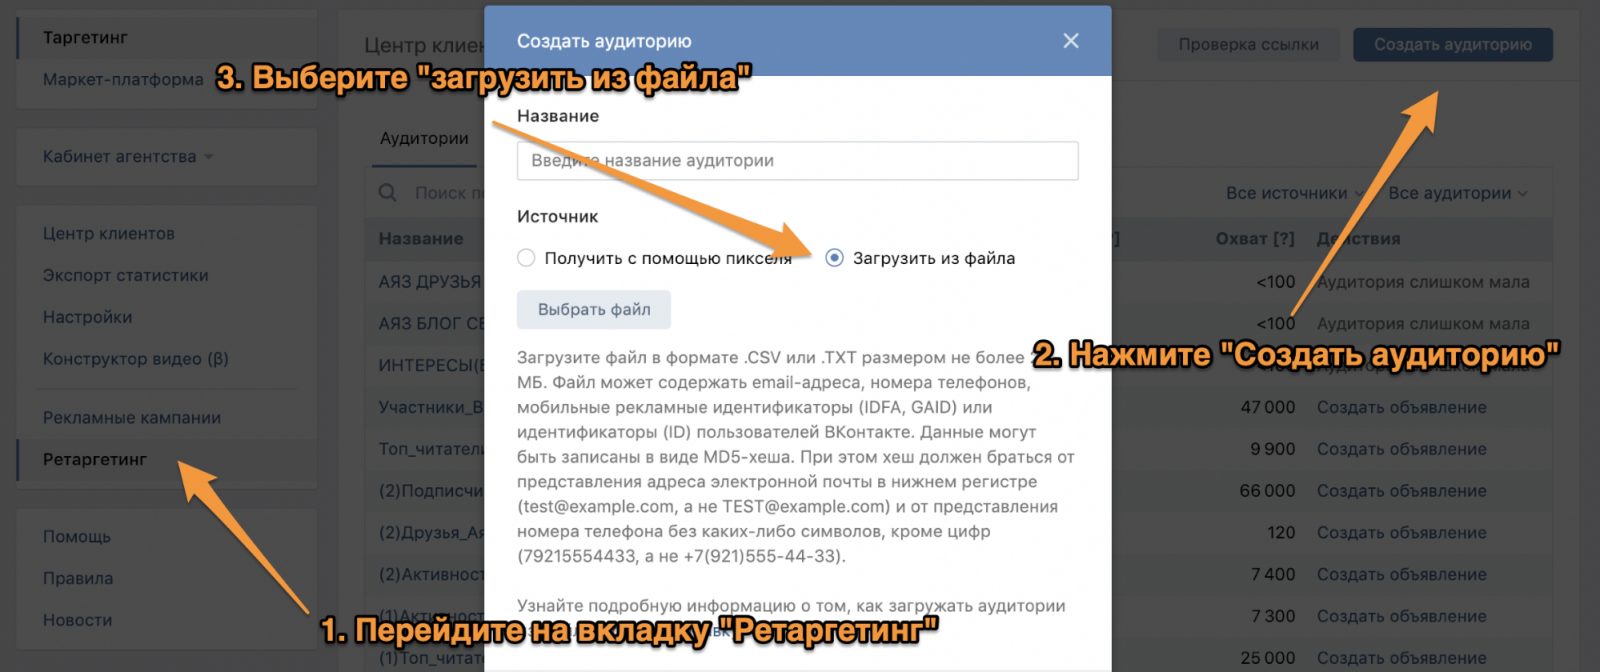 Необходимые действия для создания аудиторного таргетинга в «ВКонтакте»